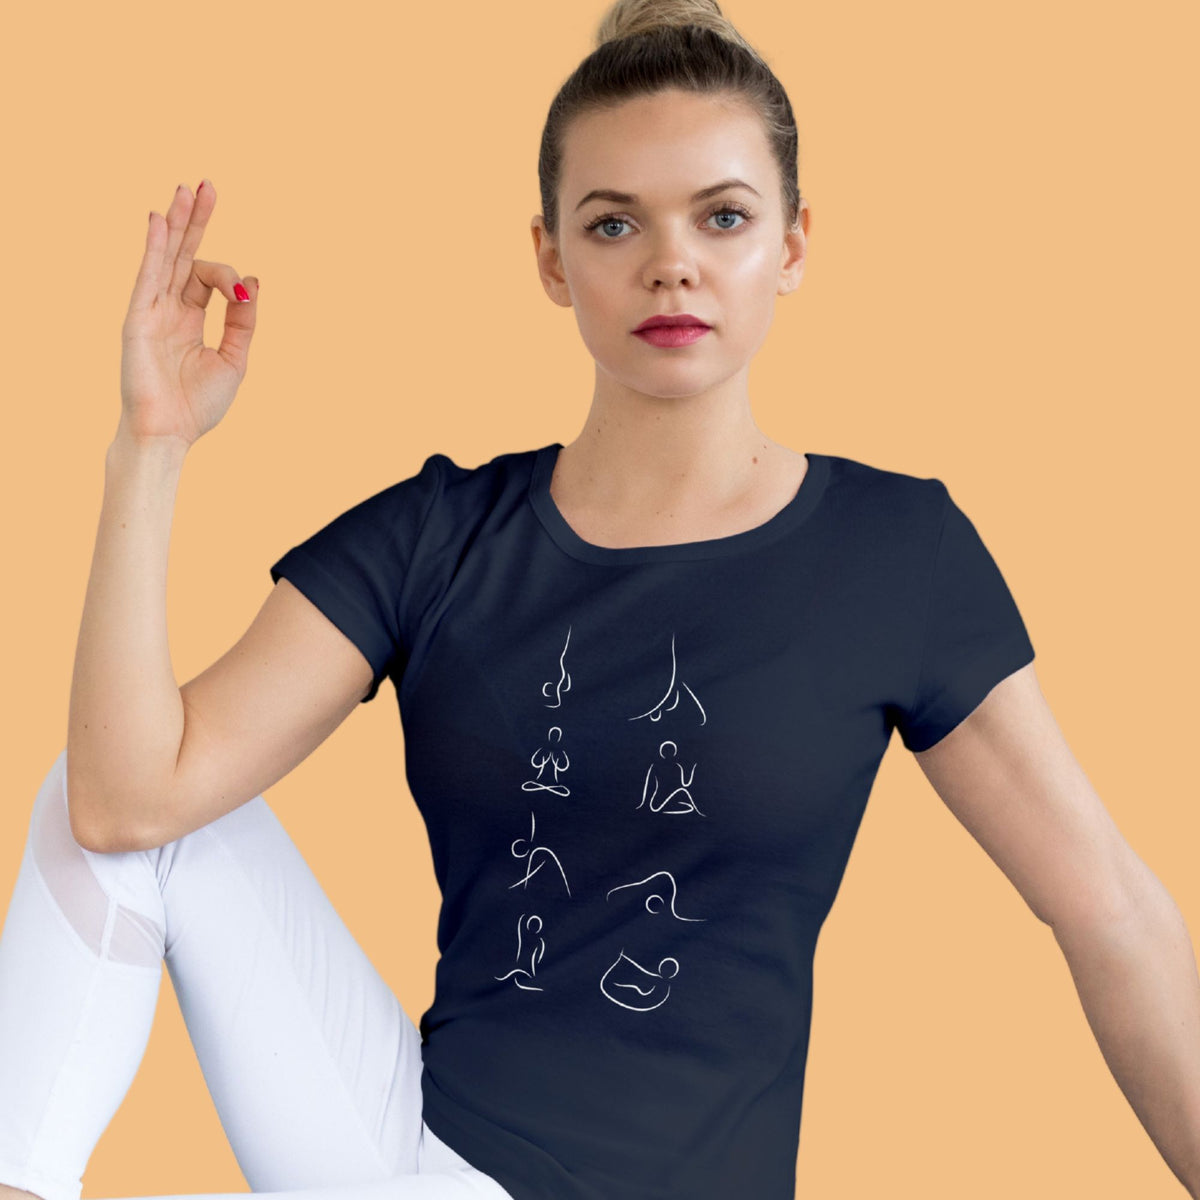 Yoga-pose-women-navy-blue-printed-yoga-tshirt-gogirgit-com_2